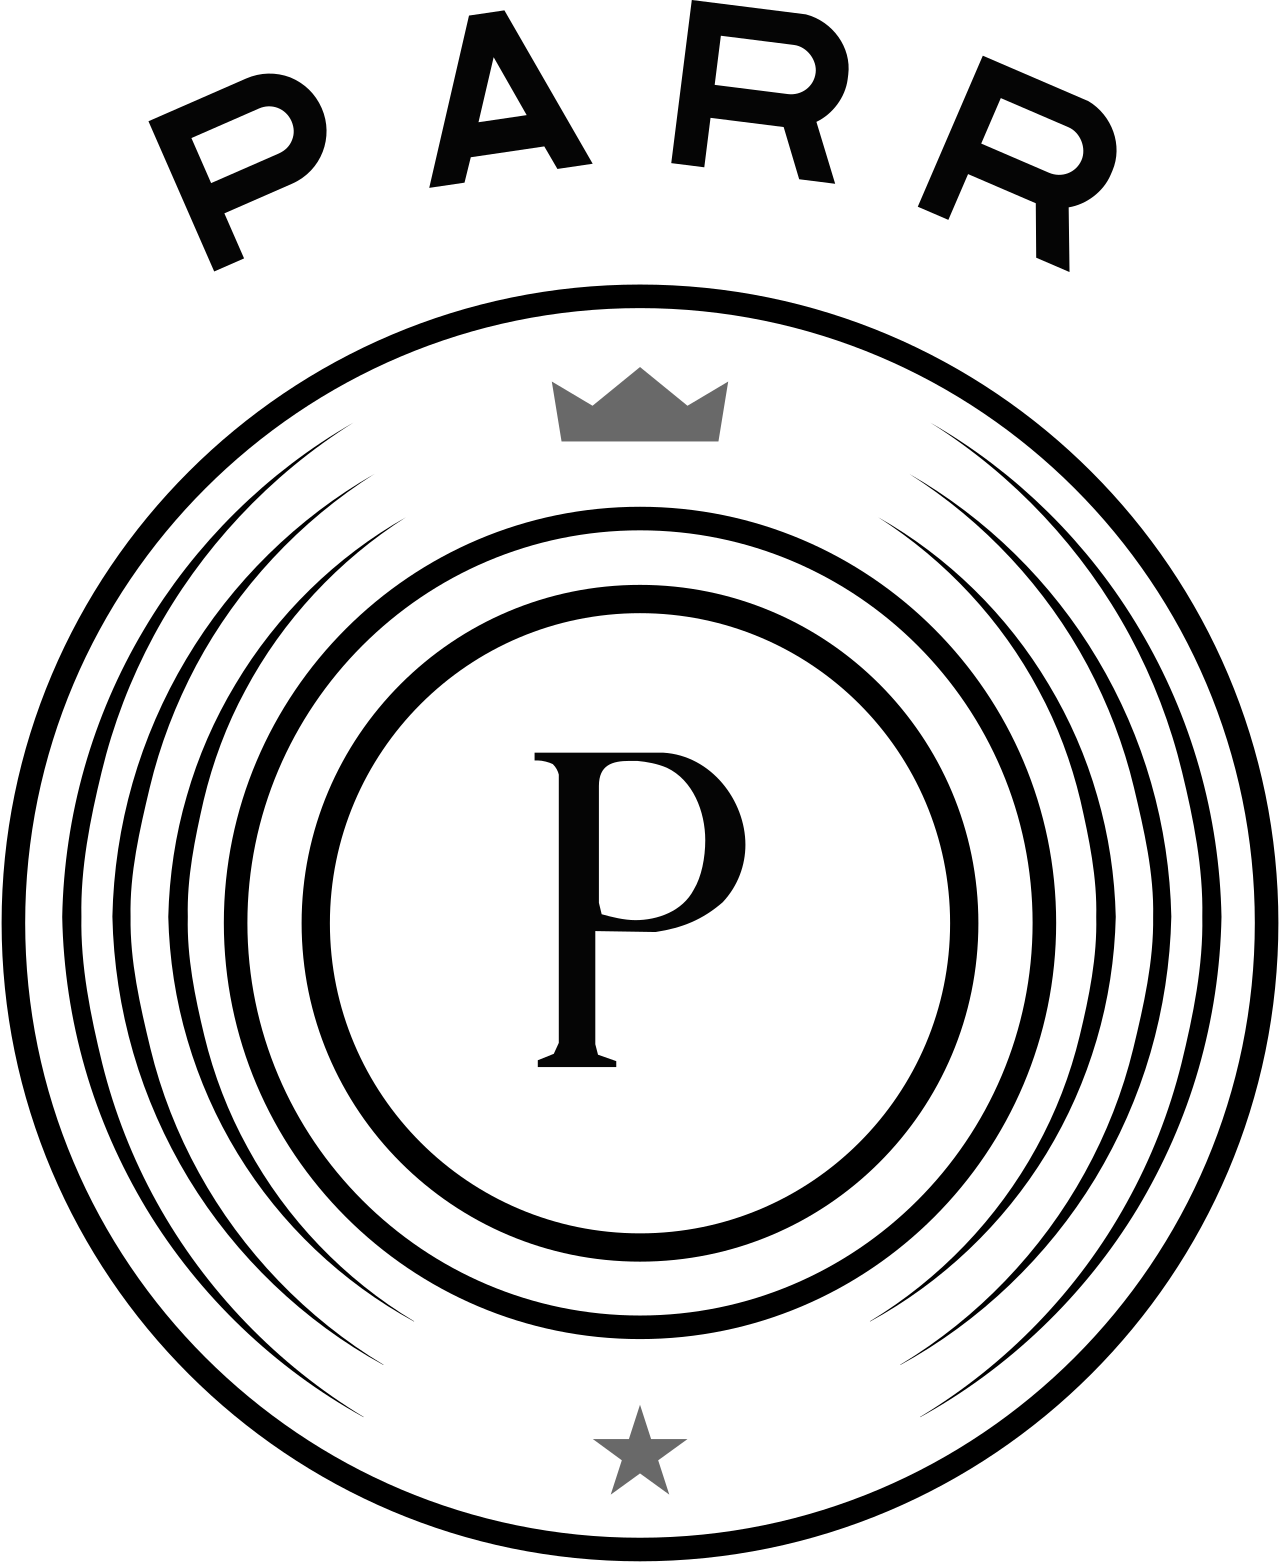 parr's logo